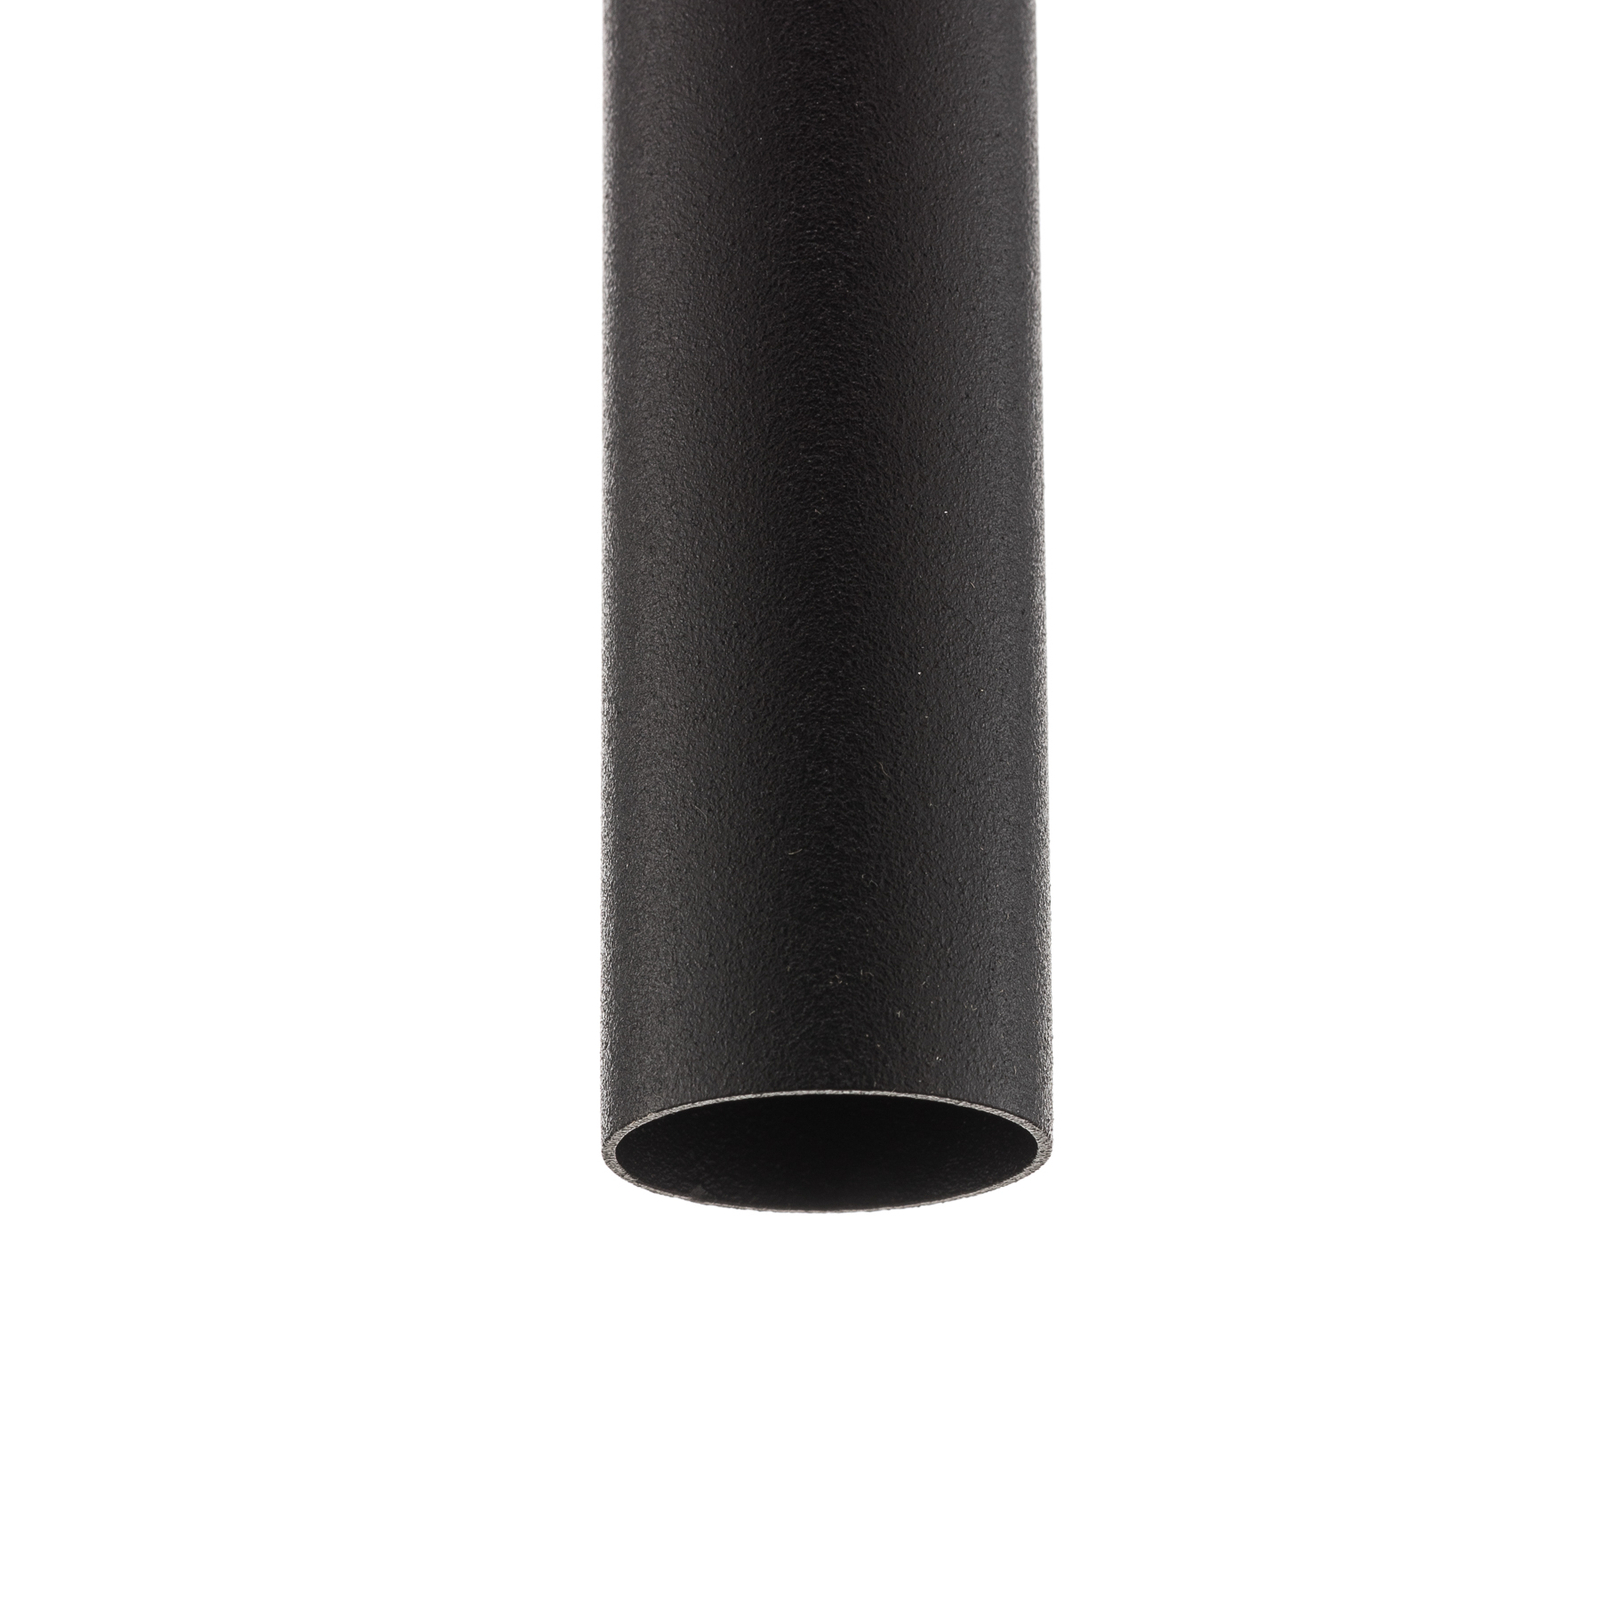 Suspension Laser à 1 lampe, noire, 49 cm